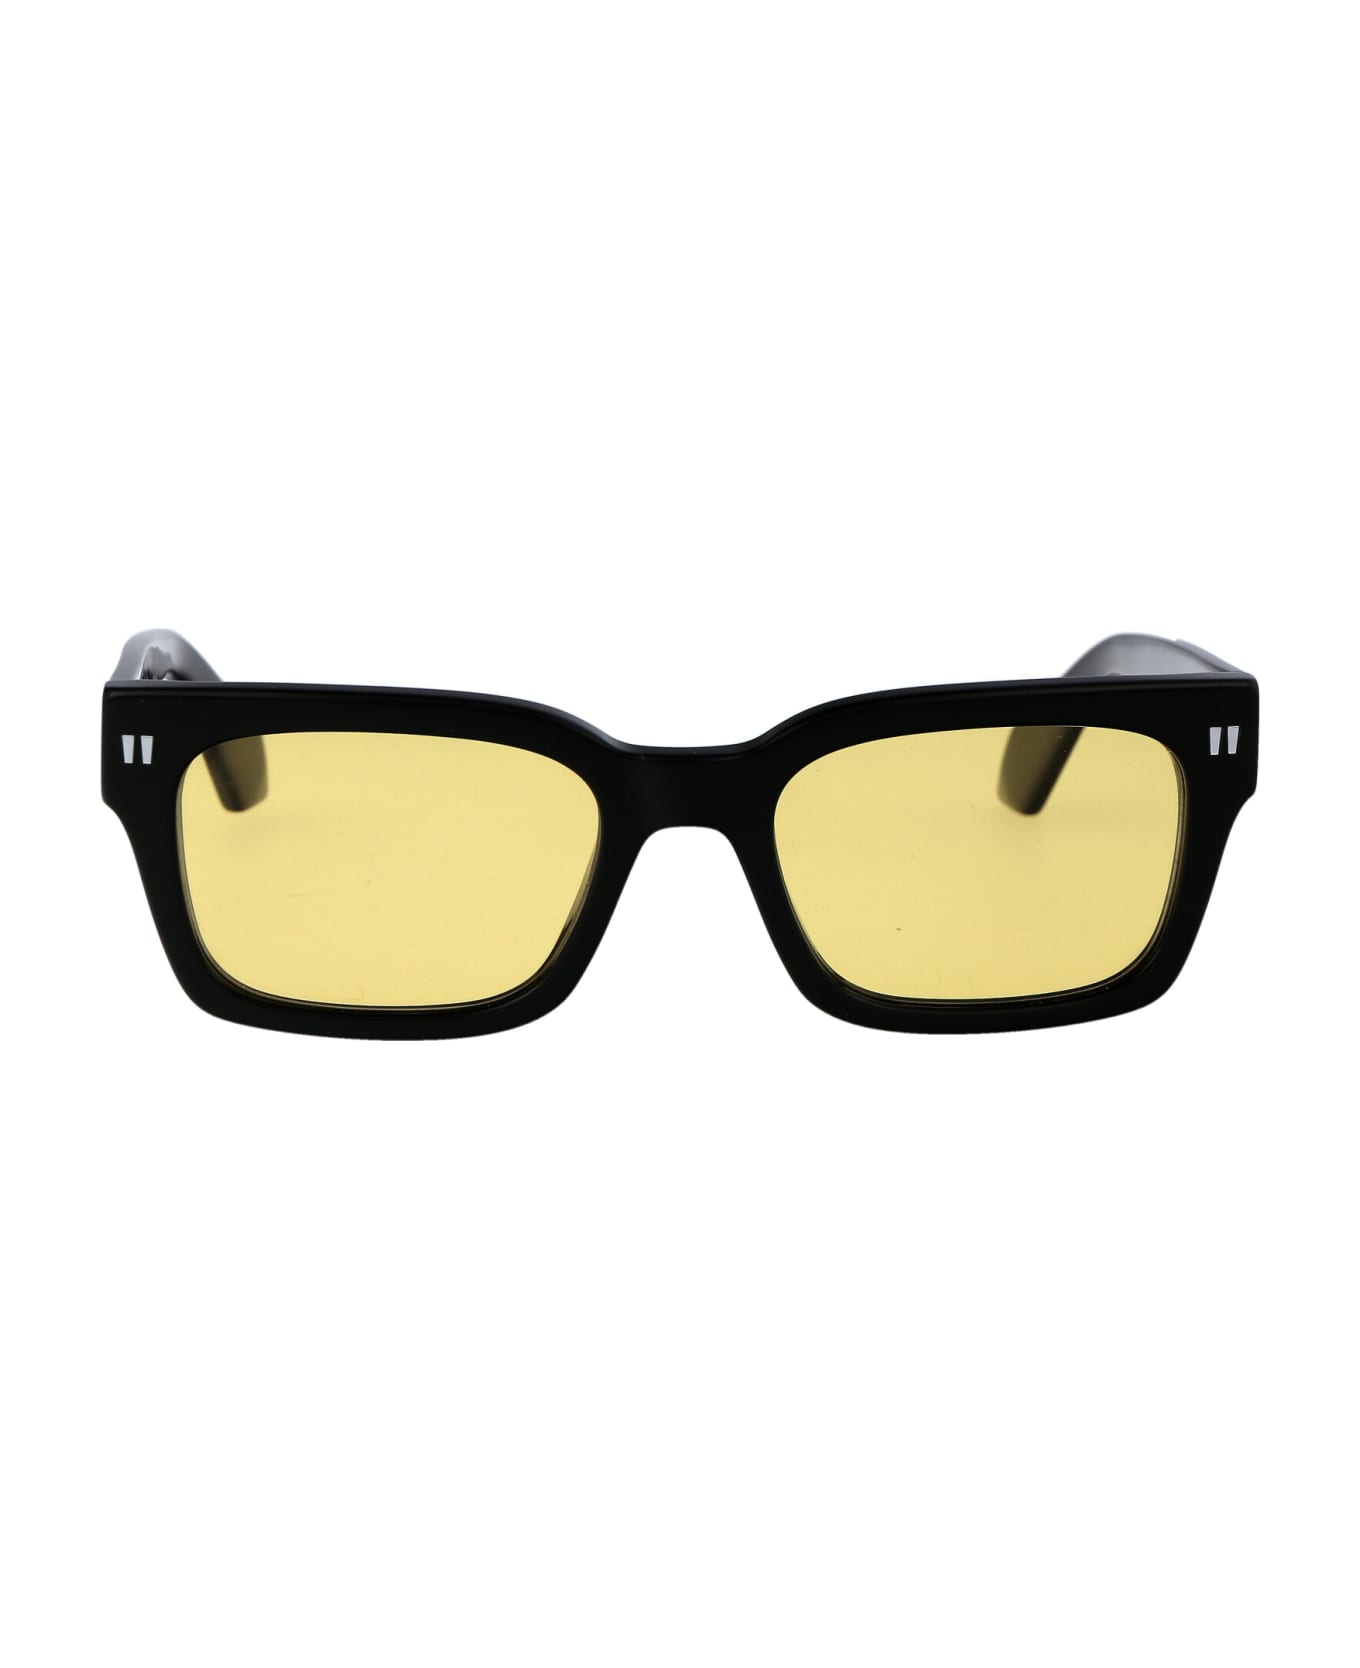 Off-White Midland Sunglasses - Black